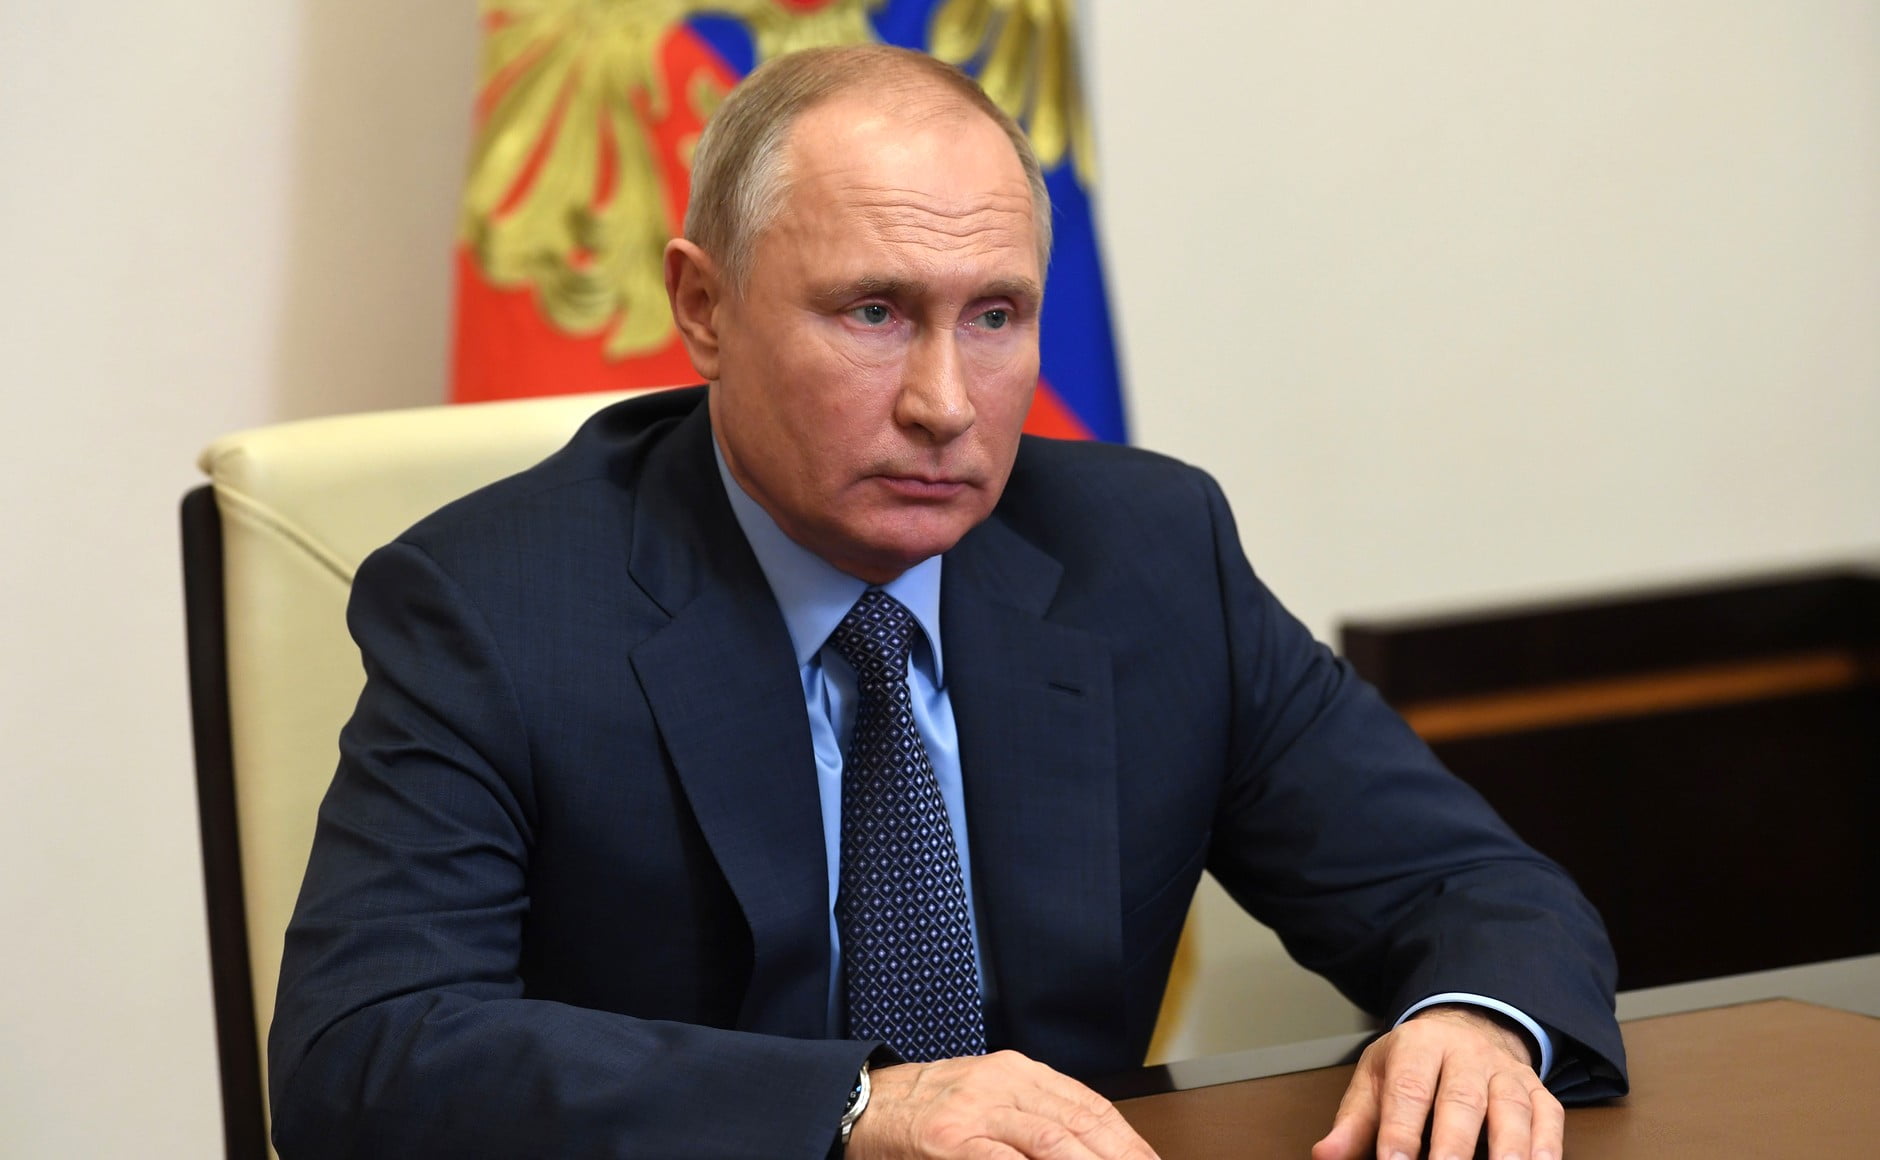 Ο Βλ. Πούτιν και ο Ιρανός ομόλογός του Ραϊσί θα έχουν συνομιλίες στη Μόσχα την ερχόμενη εβδομάδα